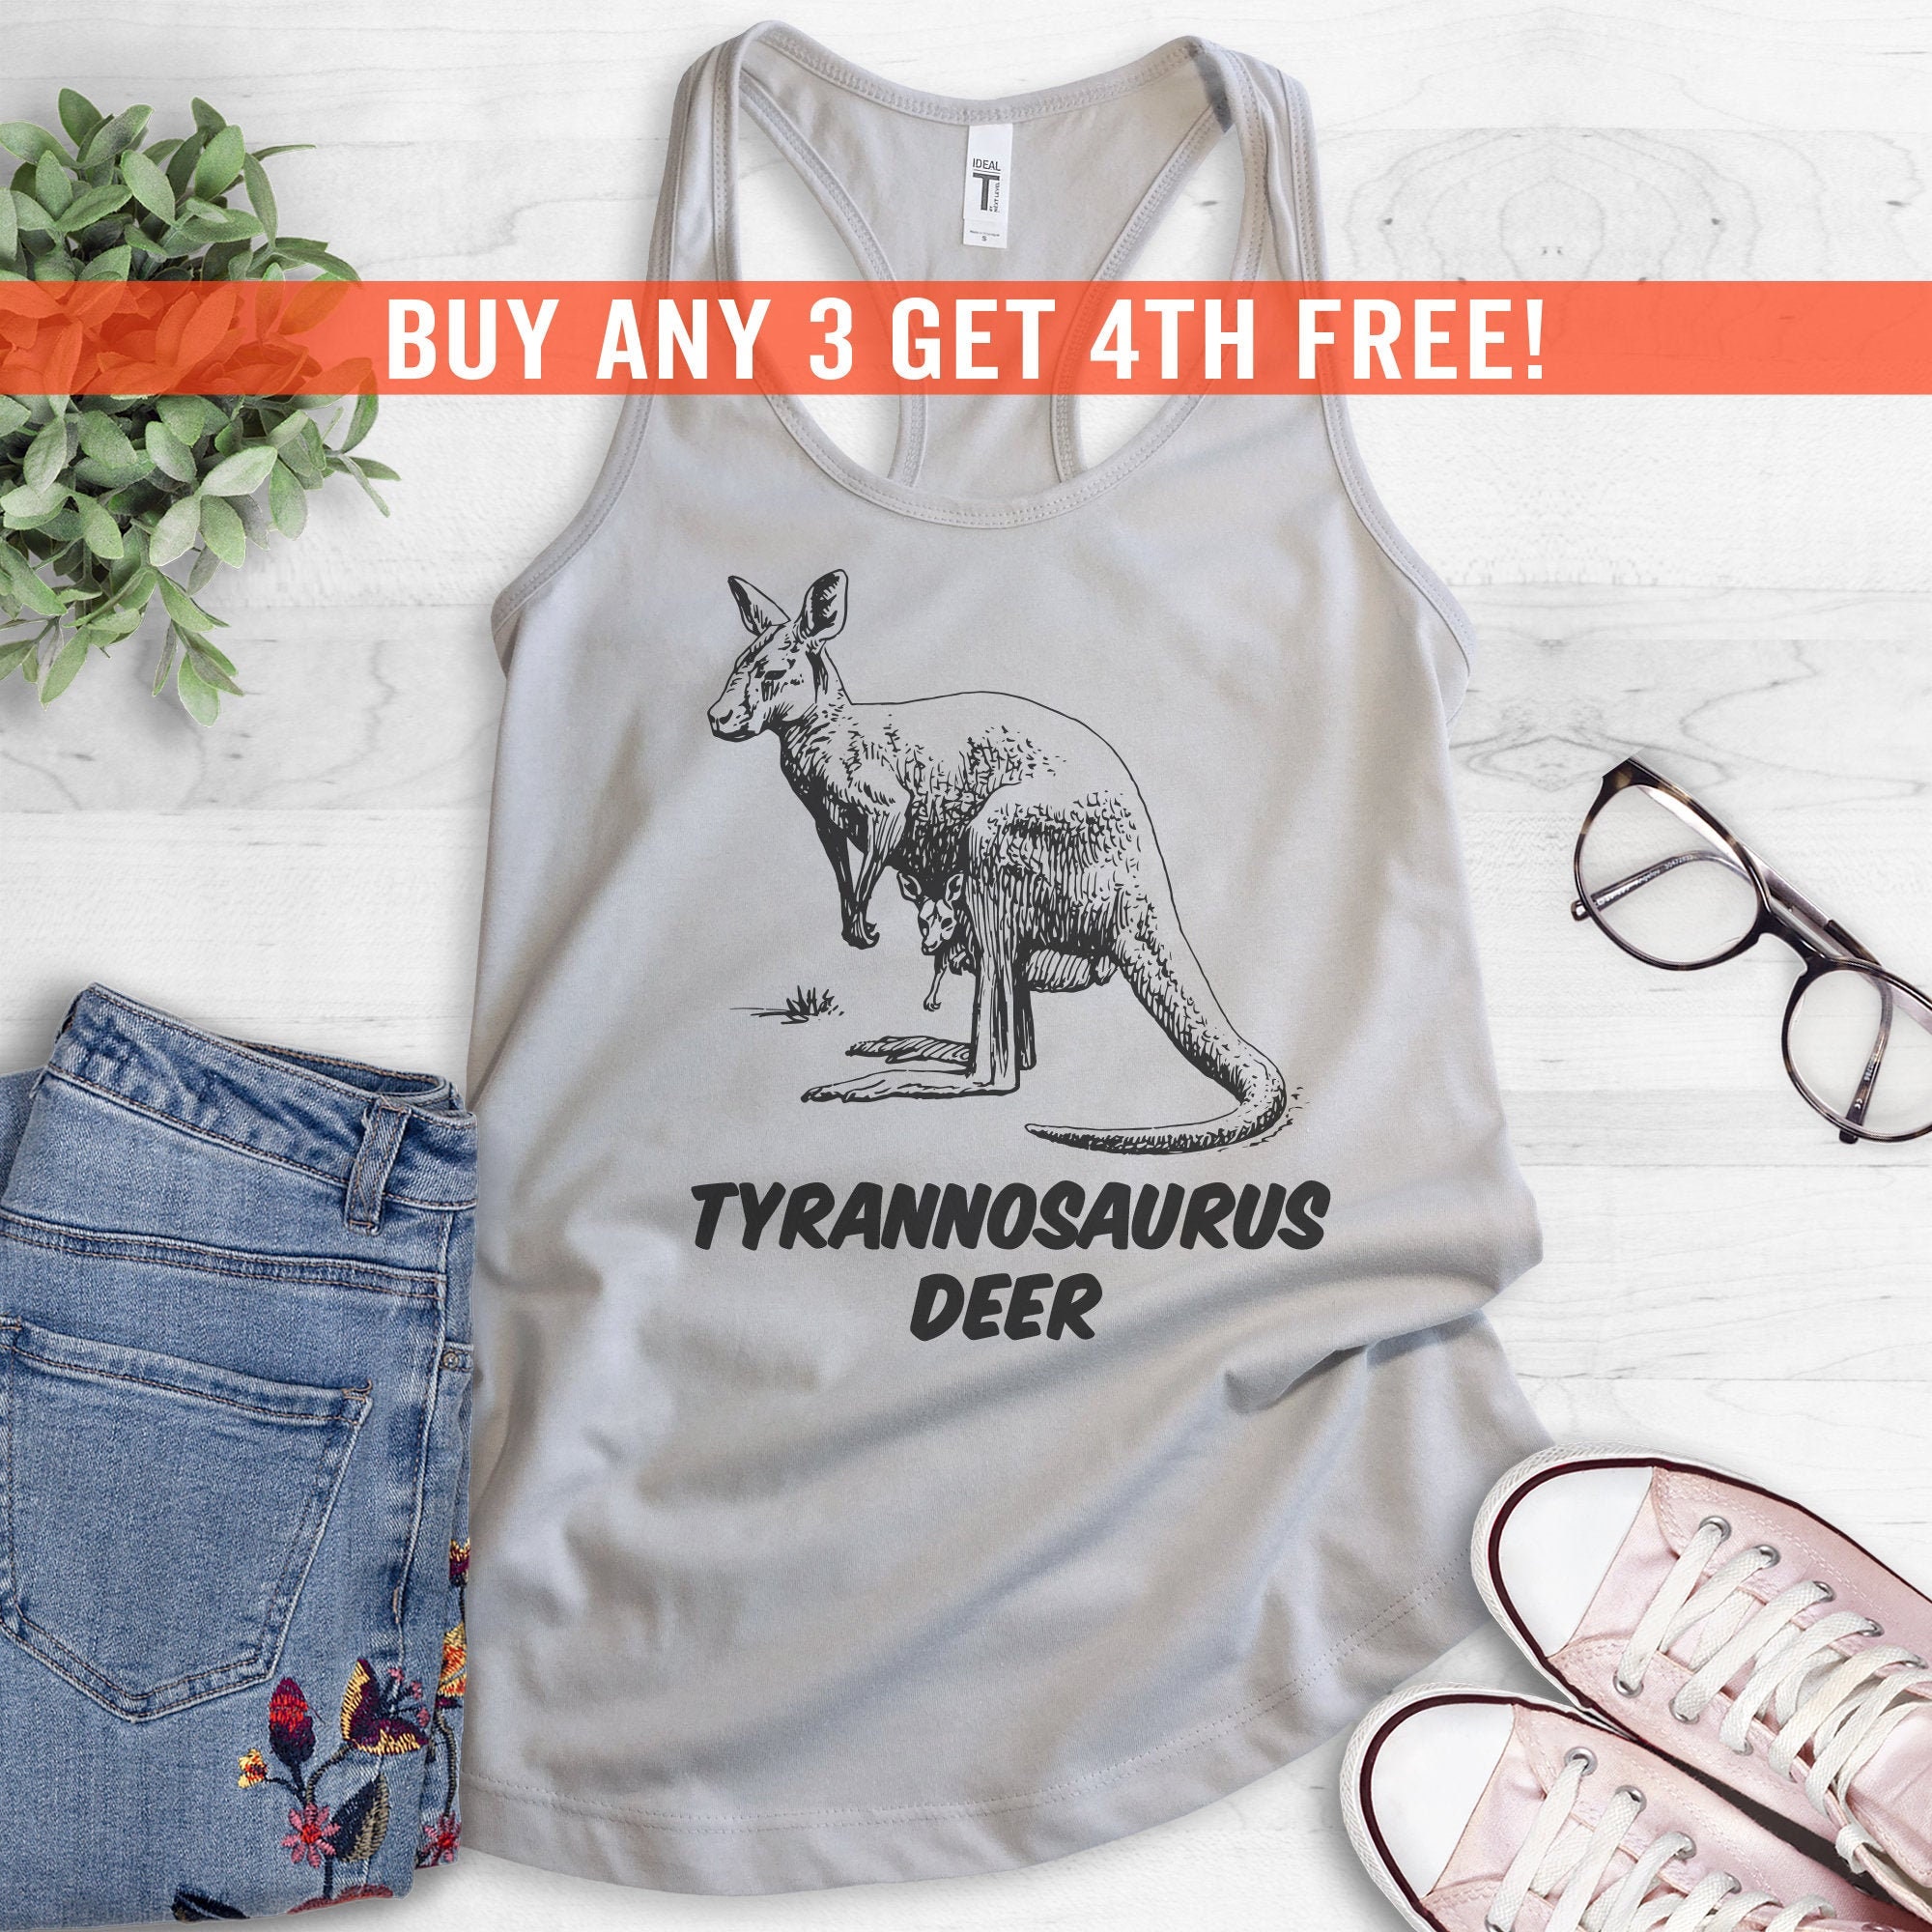 Tyrannosaurus Deer Tank Top, Ladies Cute Pun Tank Racerback, Animal Shirt - Kangaroo Tank Animal Top, Etsy Kangaroo Lover Top, Shirt